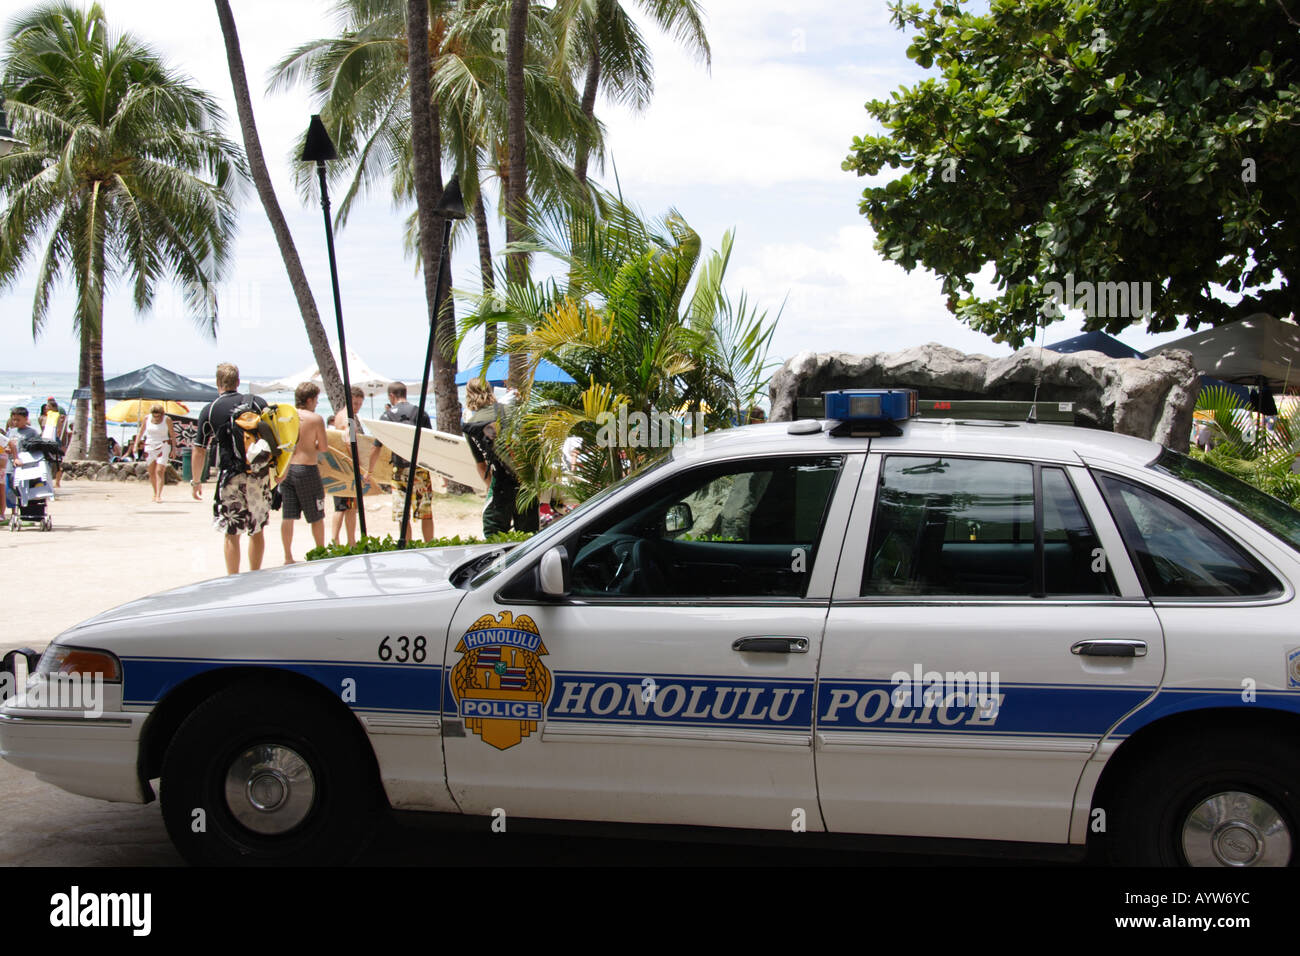 Honolulu police car at Waikiki Beach Stock Photo